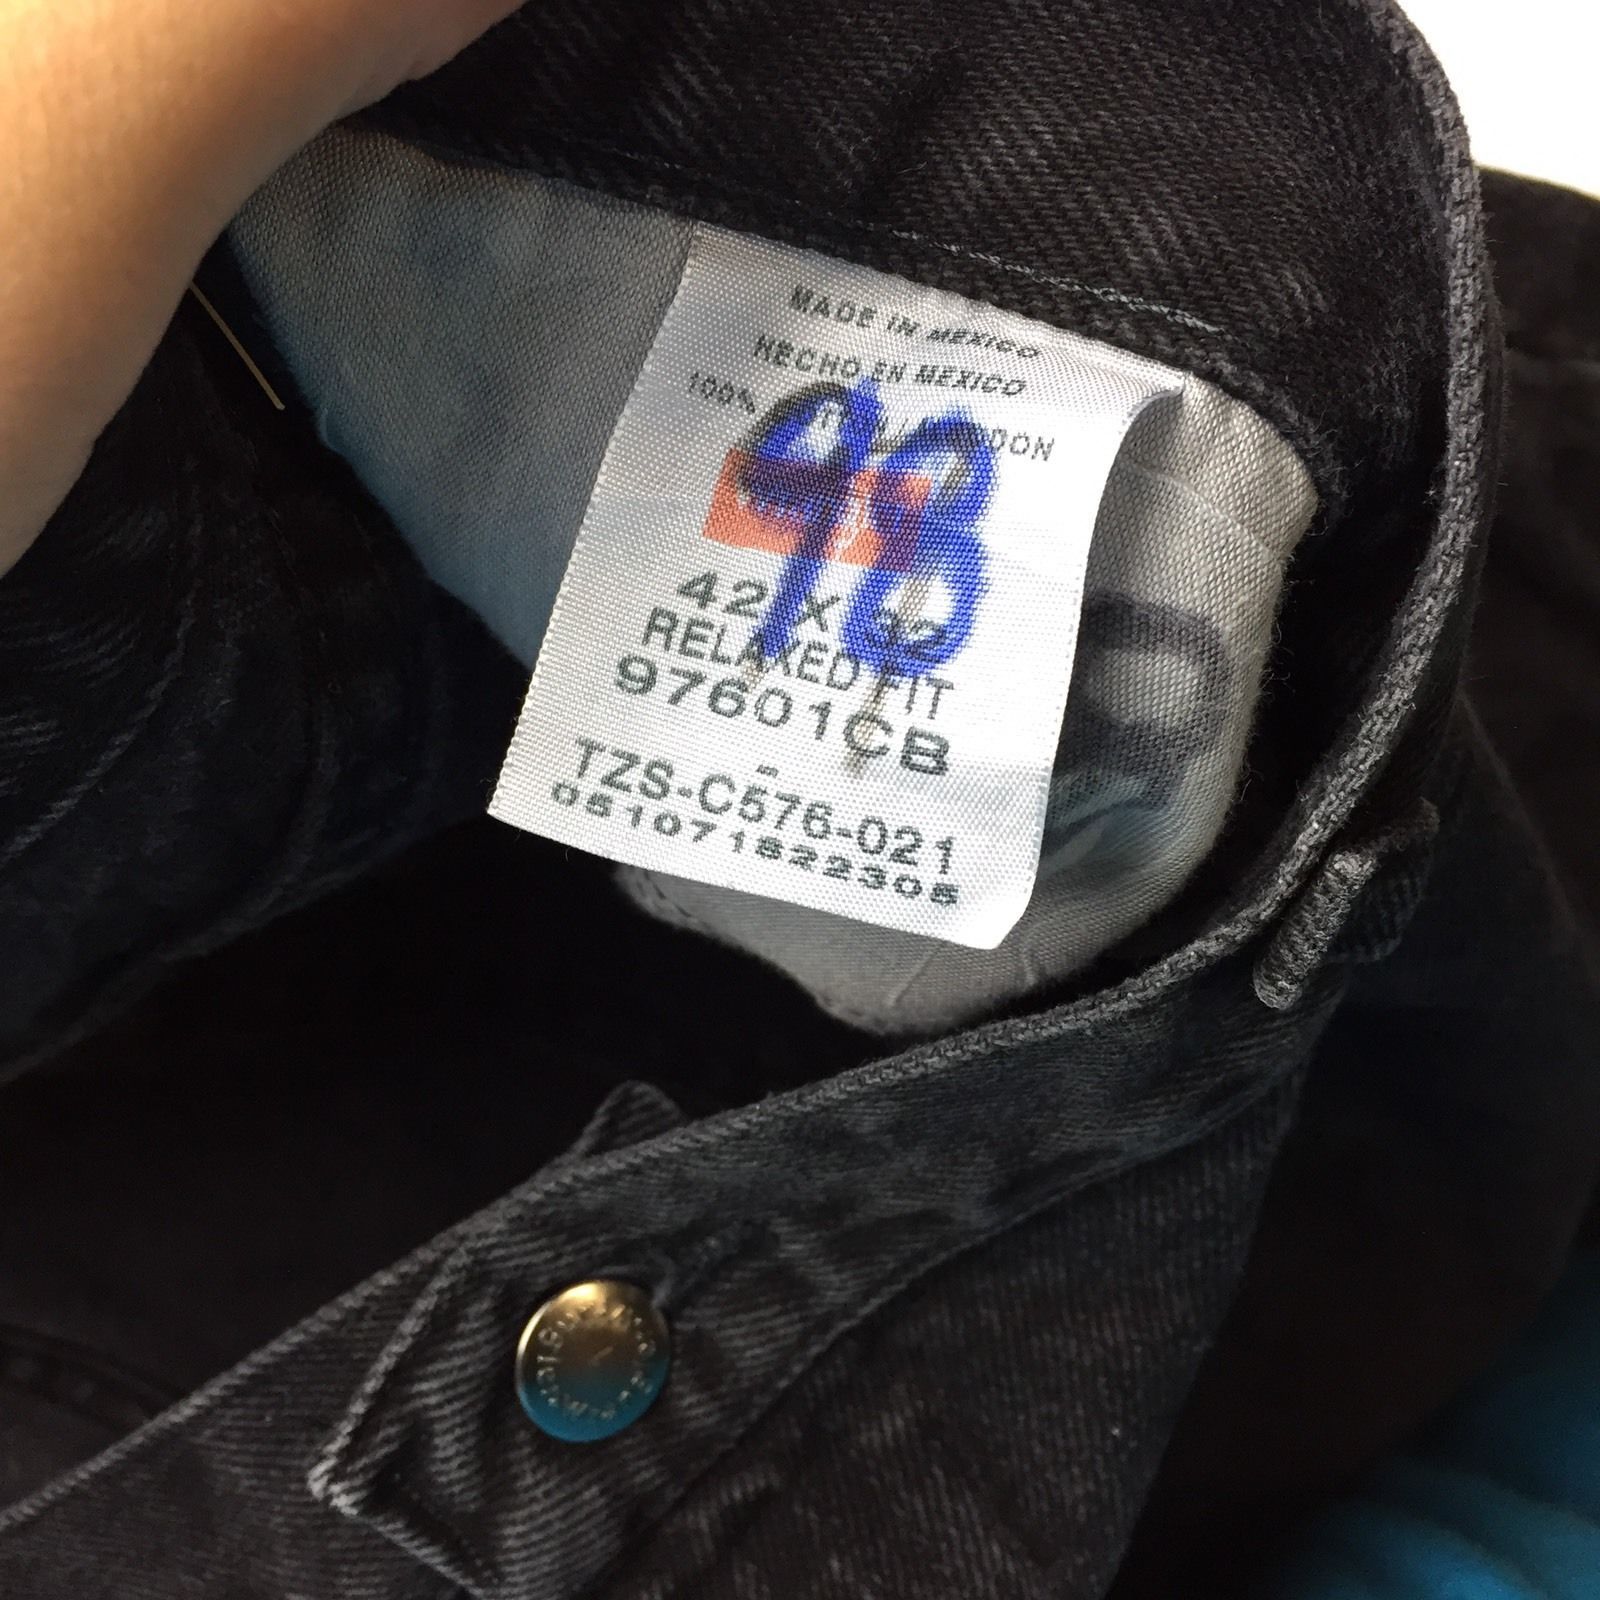 Wrangler 97601CB Black Denim Jeans Tag Size 38x30 - Jeans